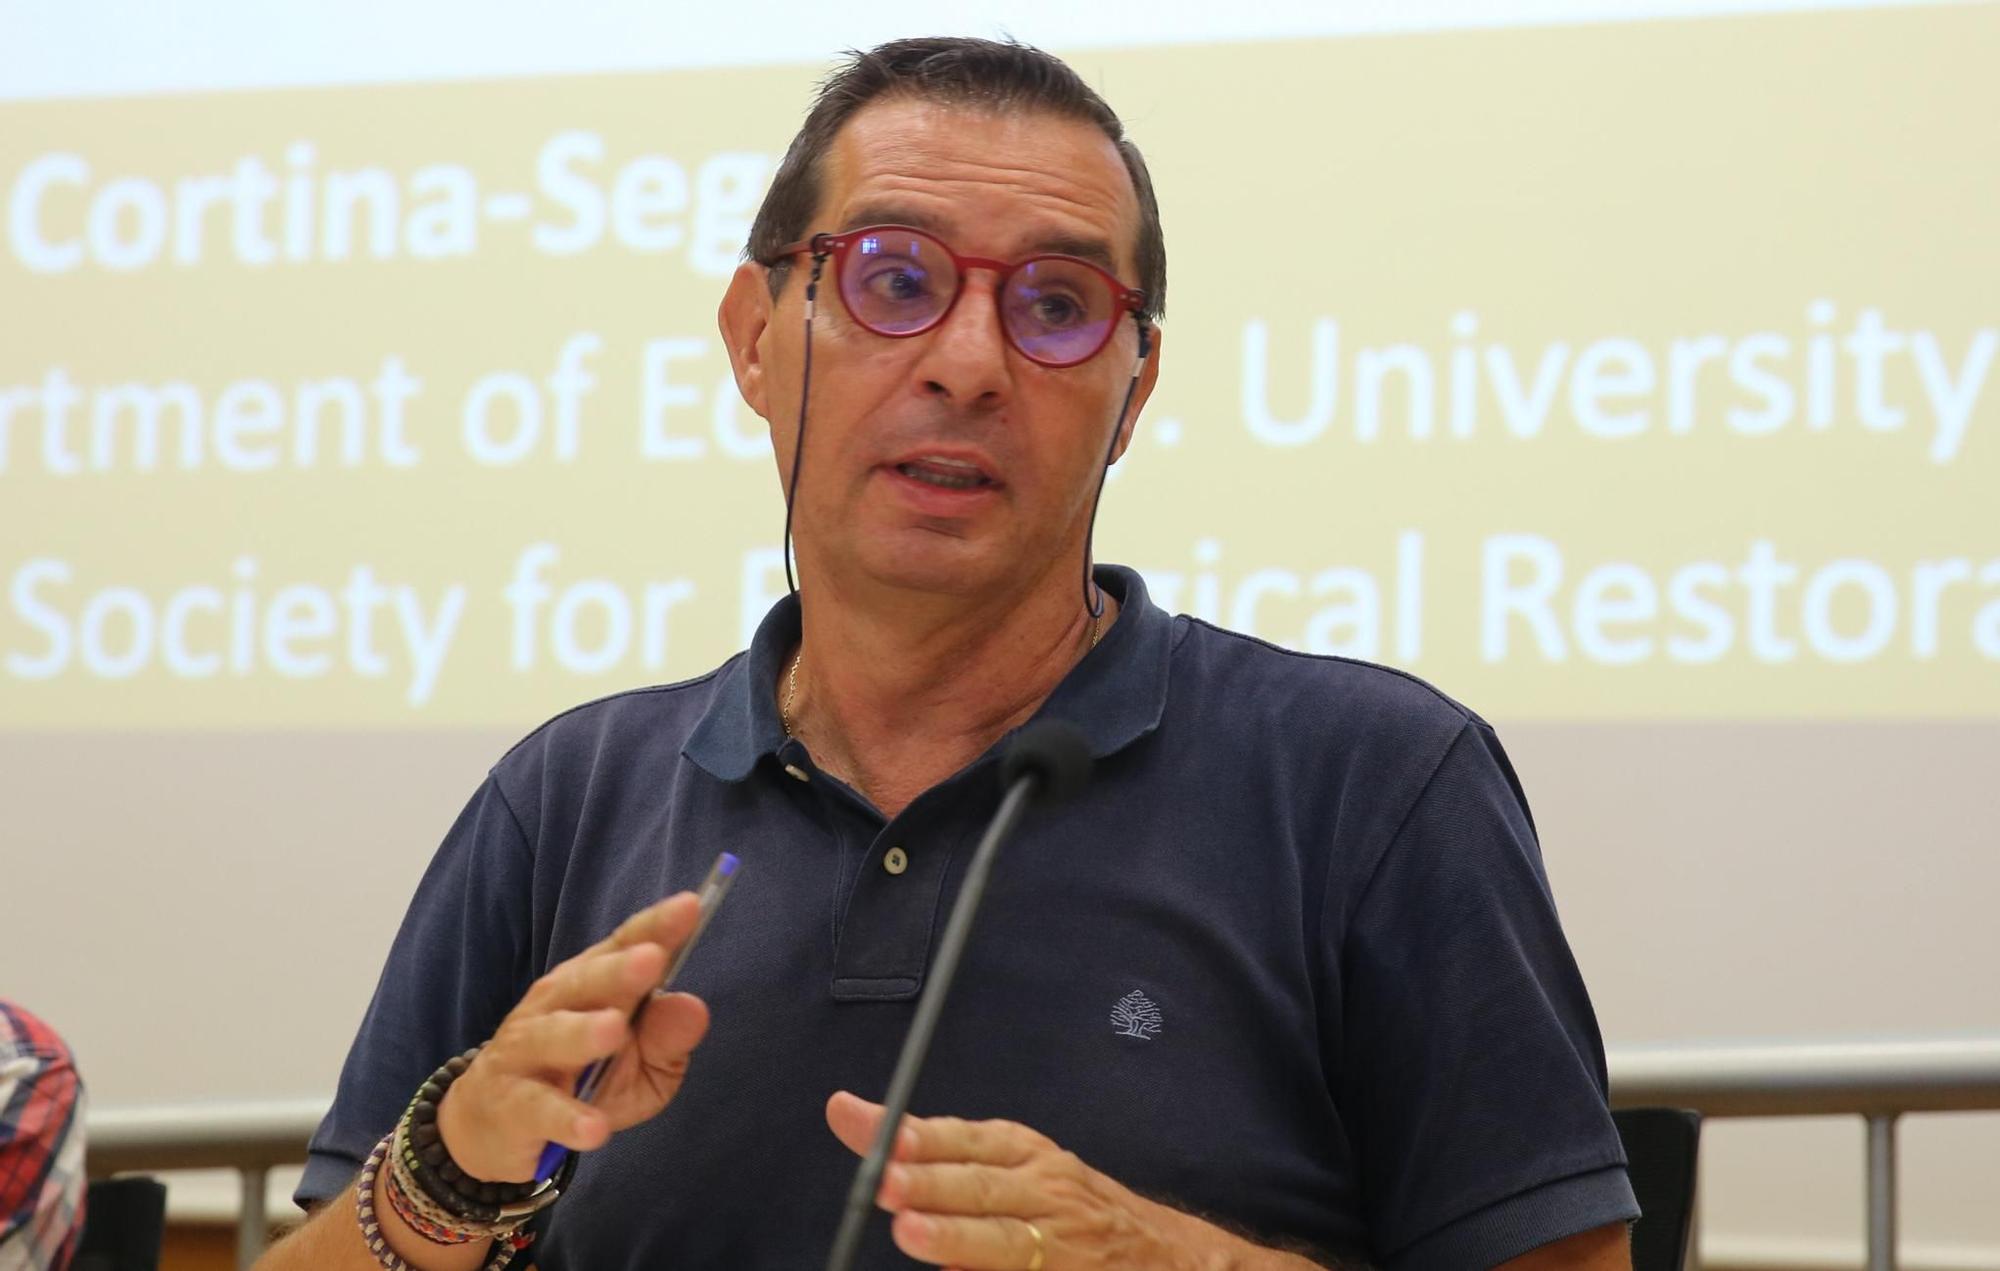 Jorge Olcina Cantos, catedrático de Análisis Geográfico Regional de la Universidad de Alicante.